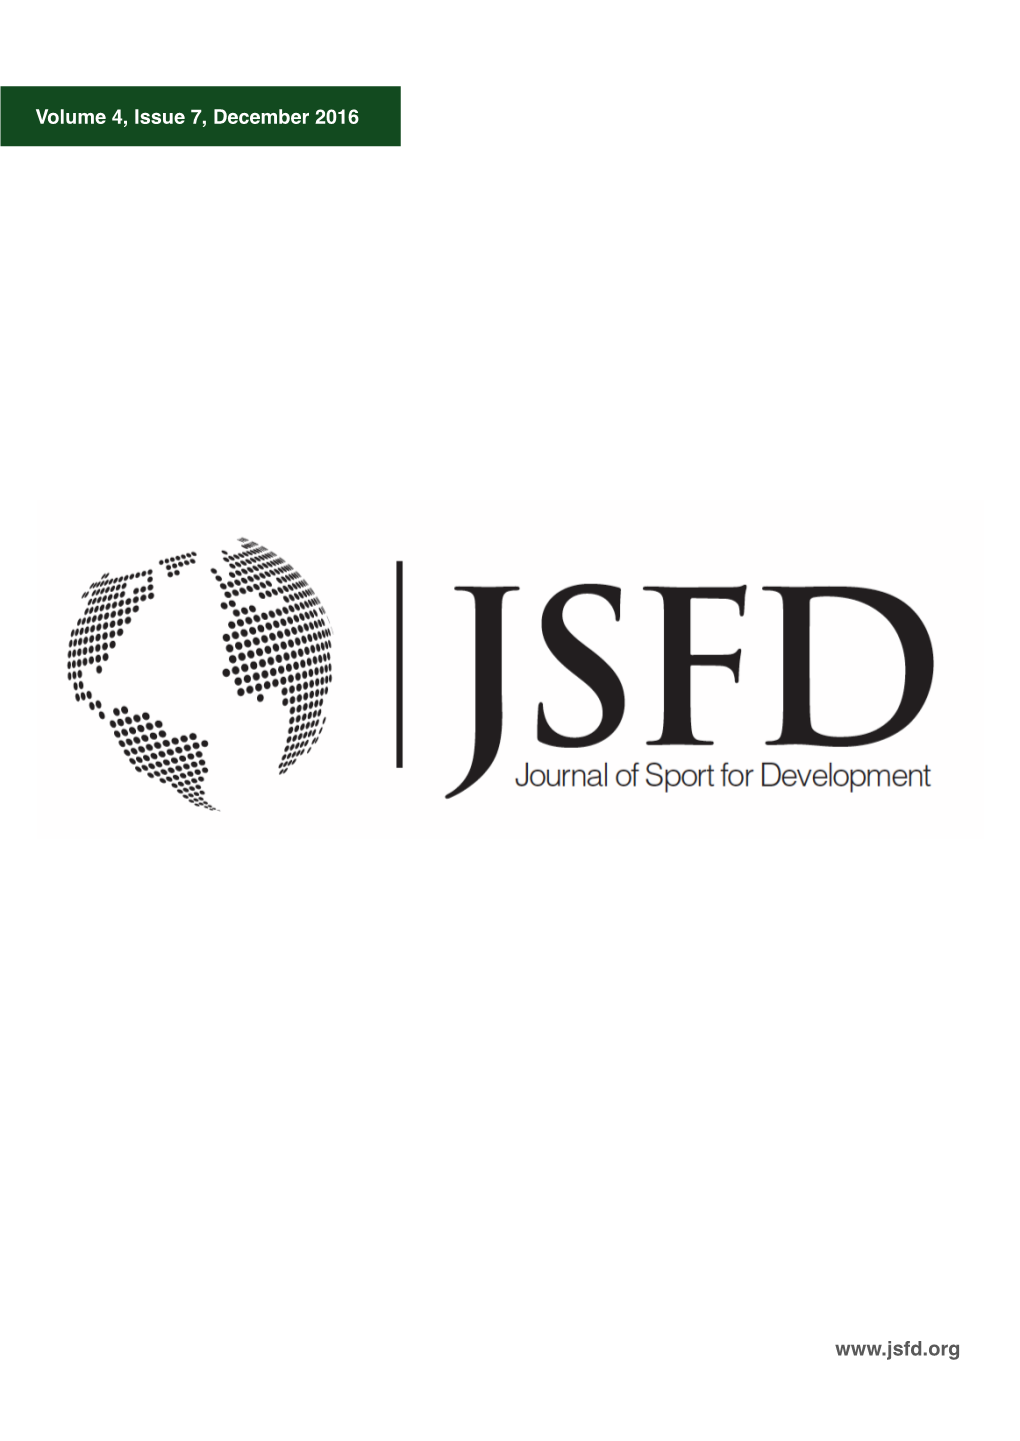 JSFD Vol 4 Issue 7 Dec 2016